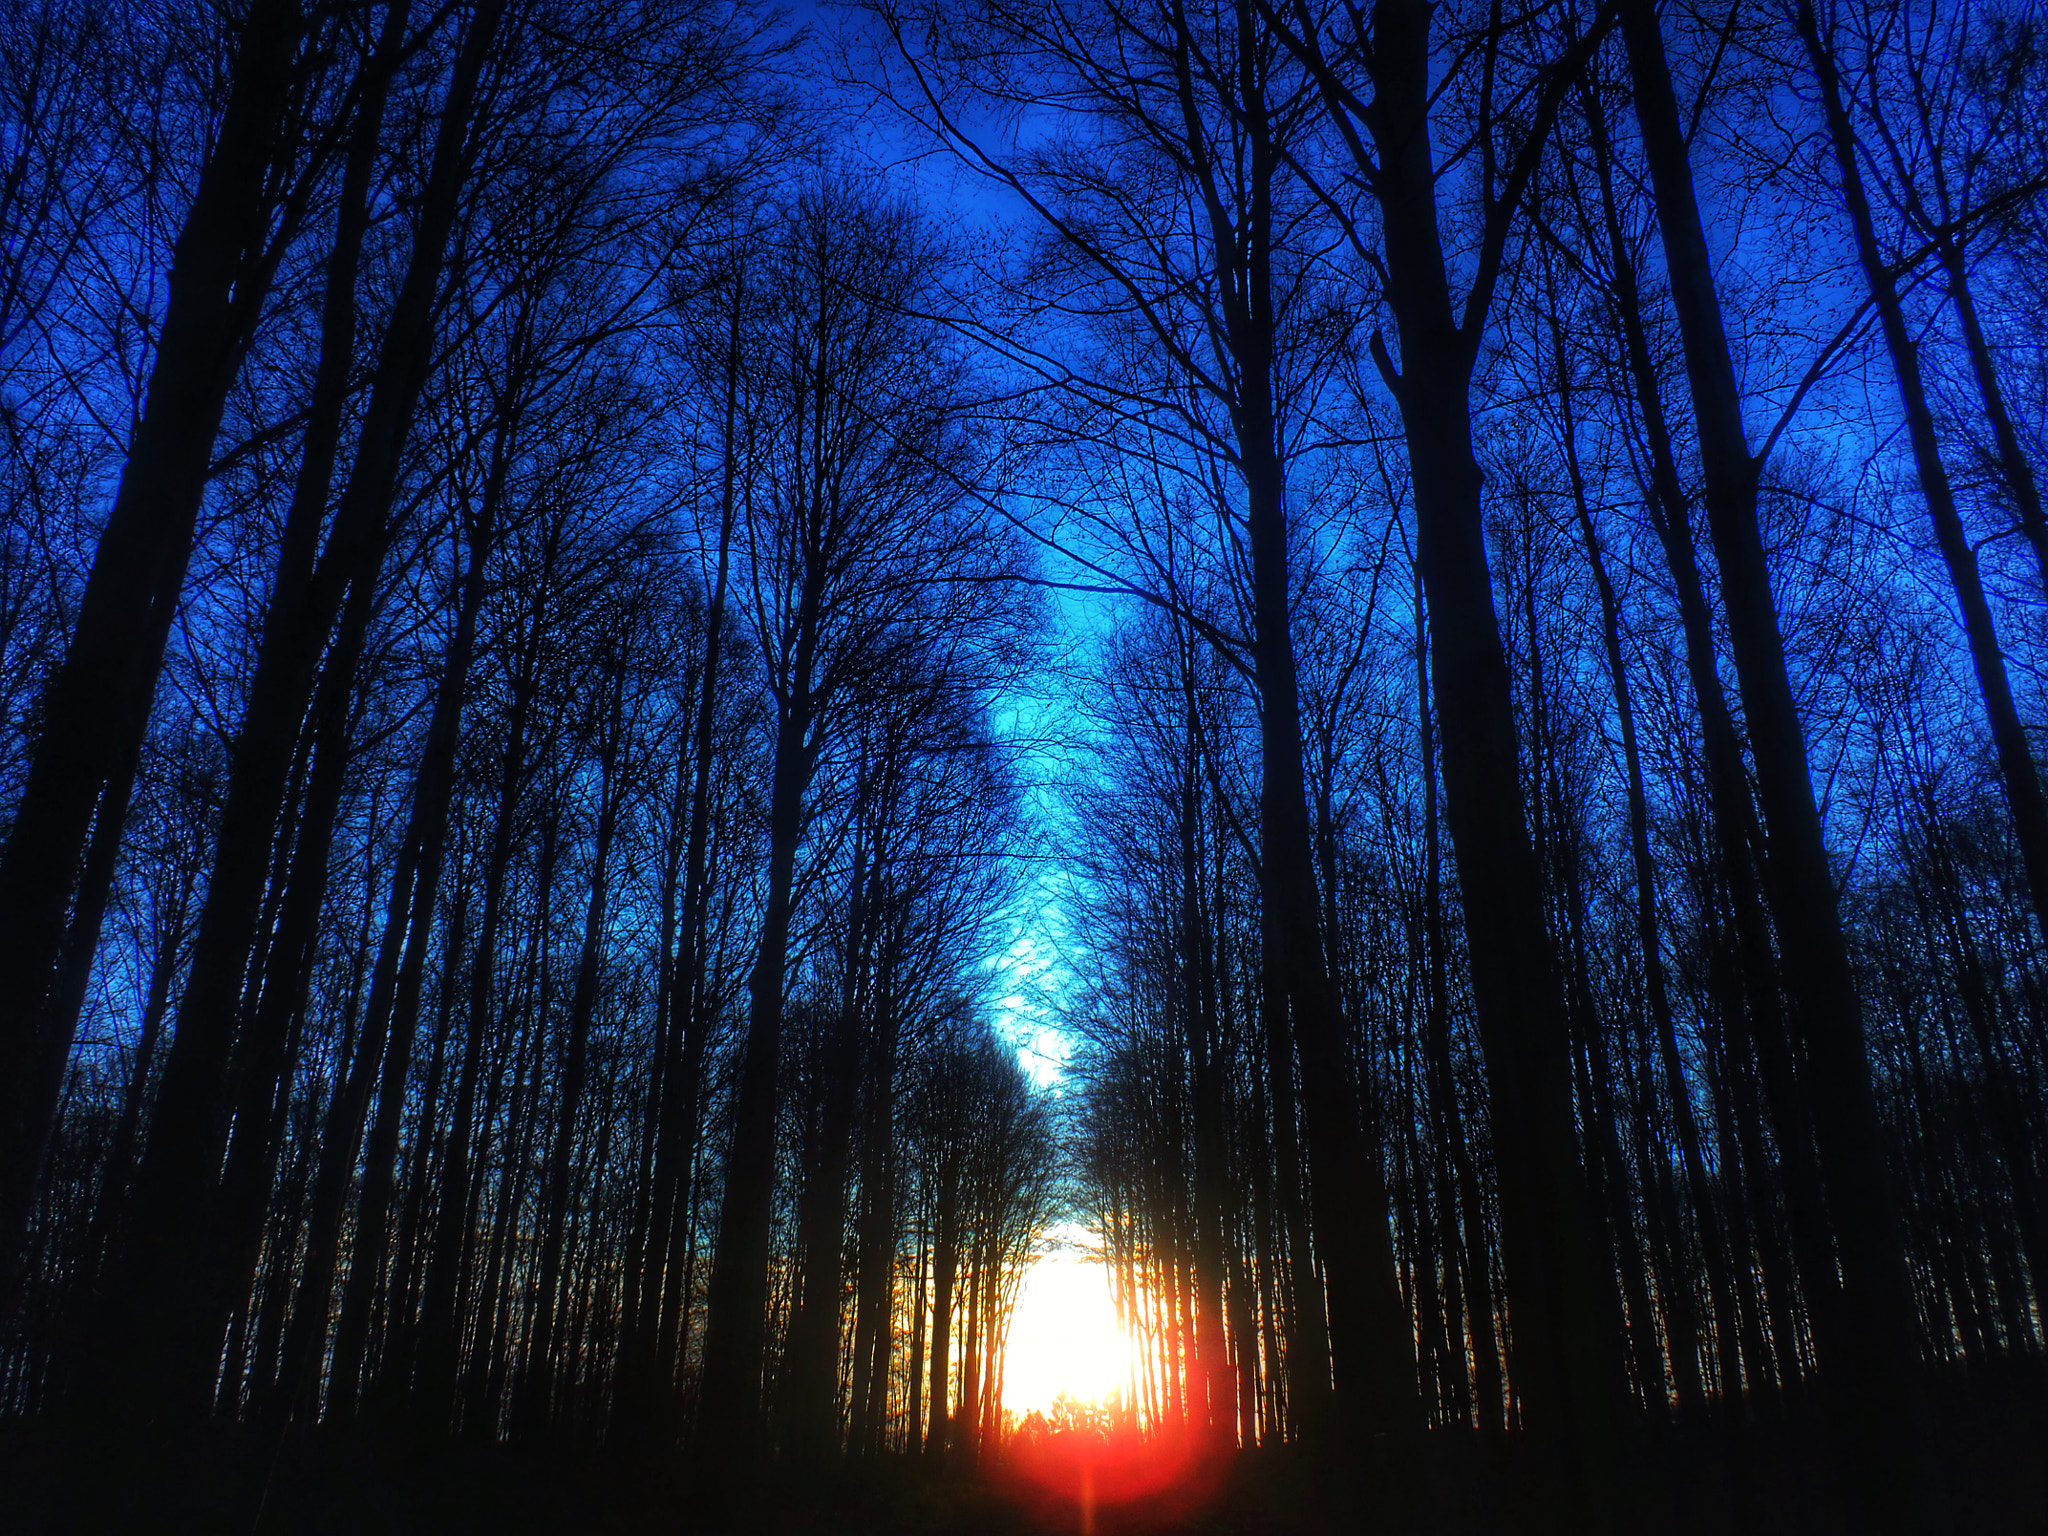 Olympus StylusTough-6020 sample photo. Blue sunrise photography